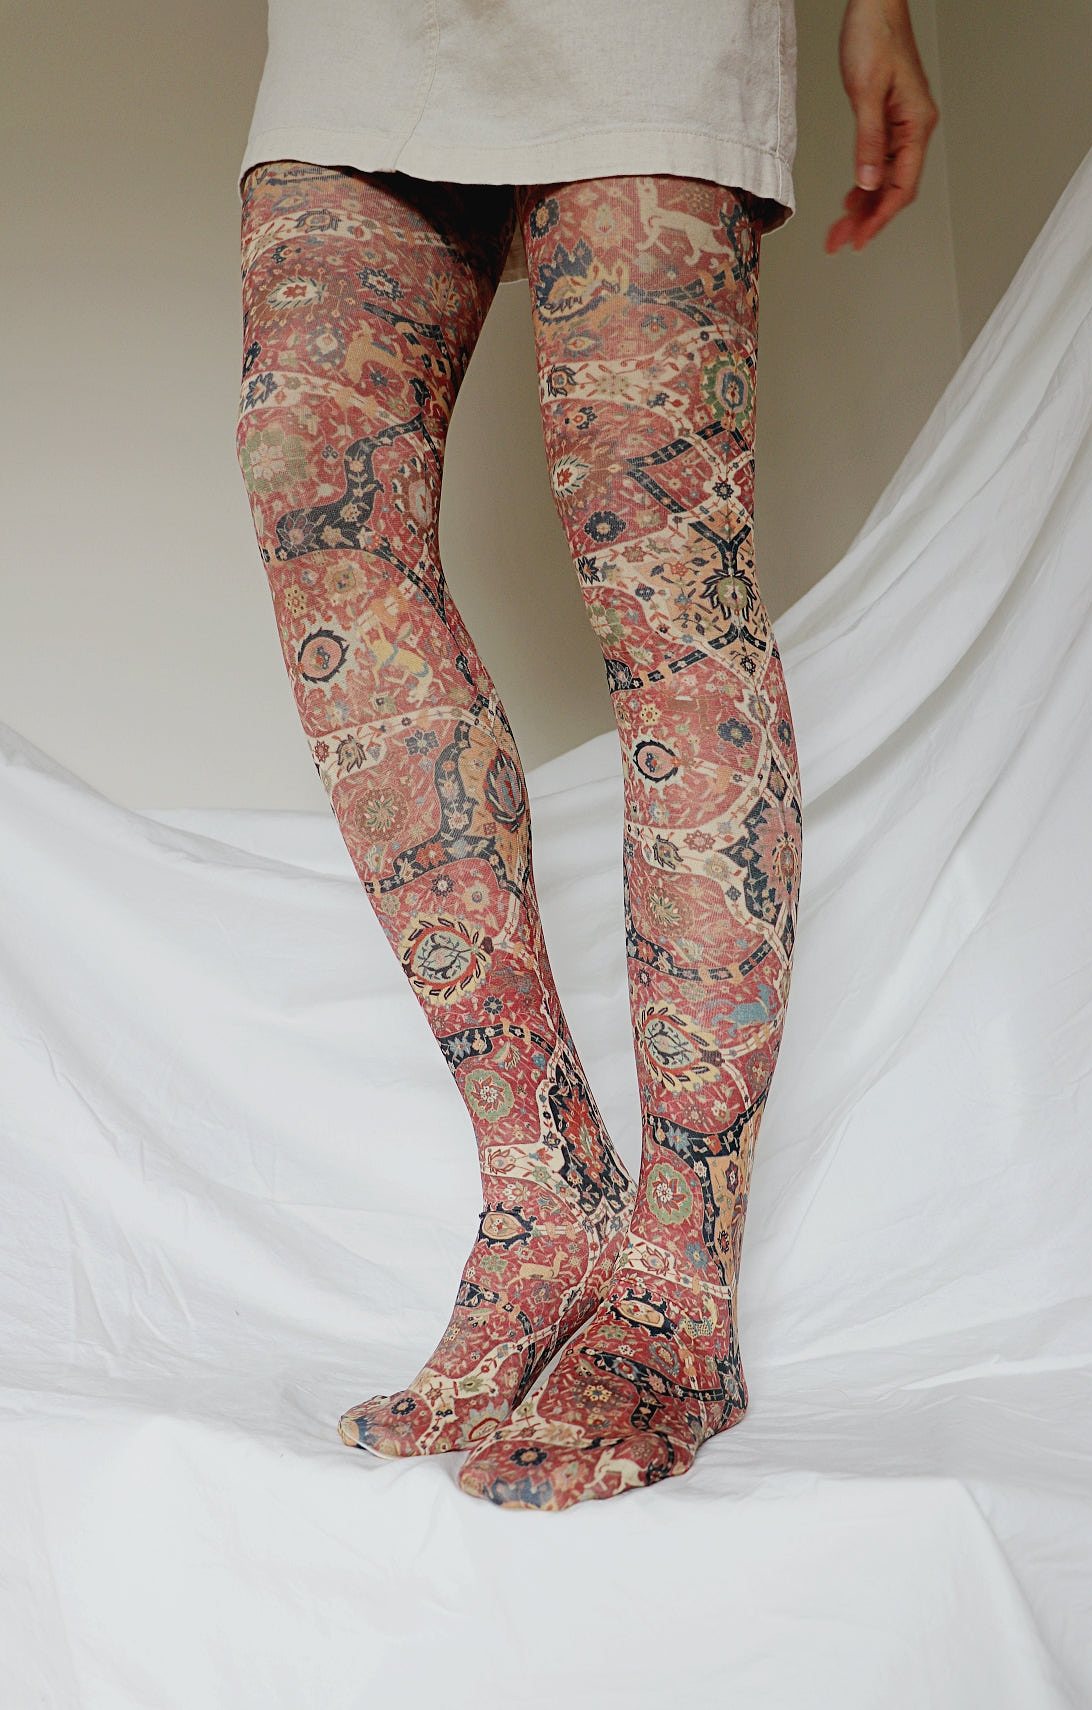 Women's Tights Black Stockings Print Hosieryandsocks